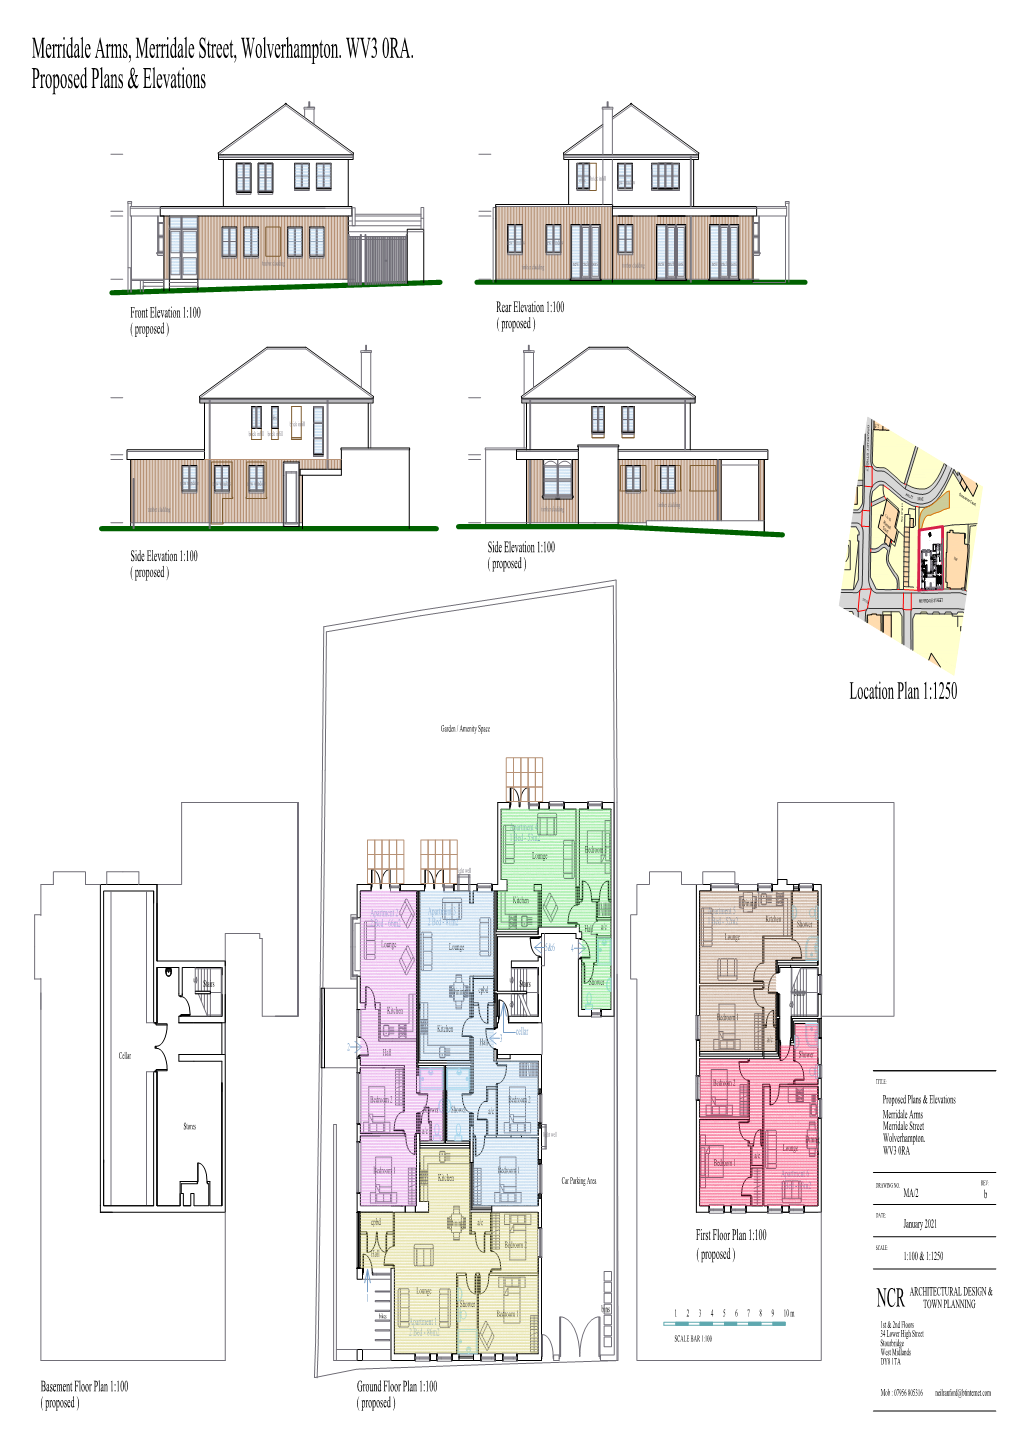 Proposed Plans & Elevations Merridale Arms, Merridale Street